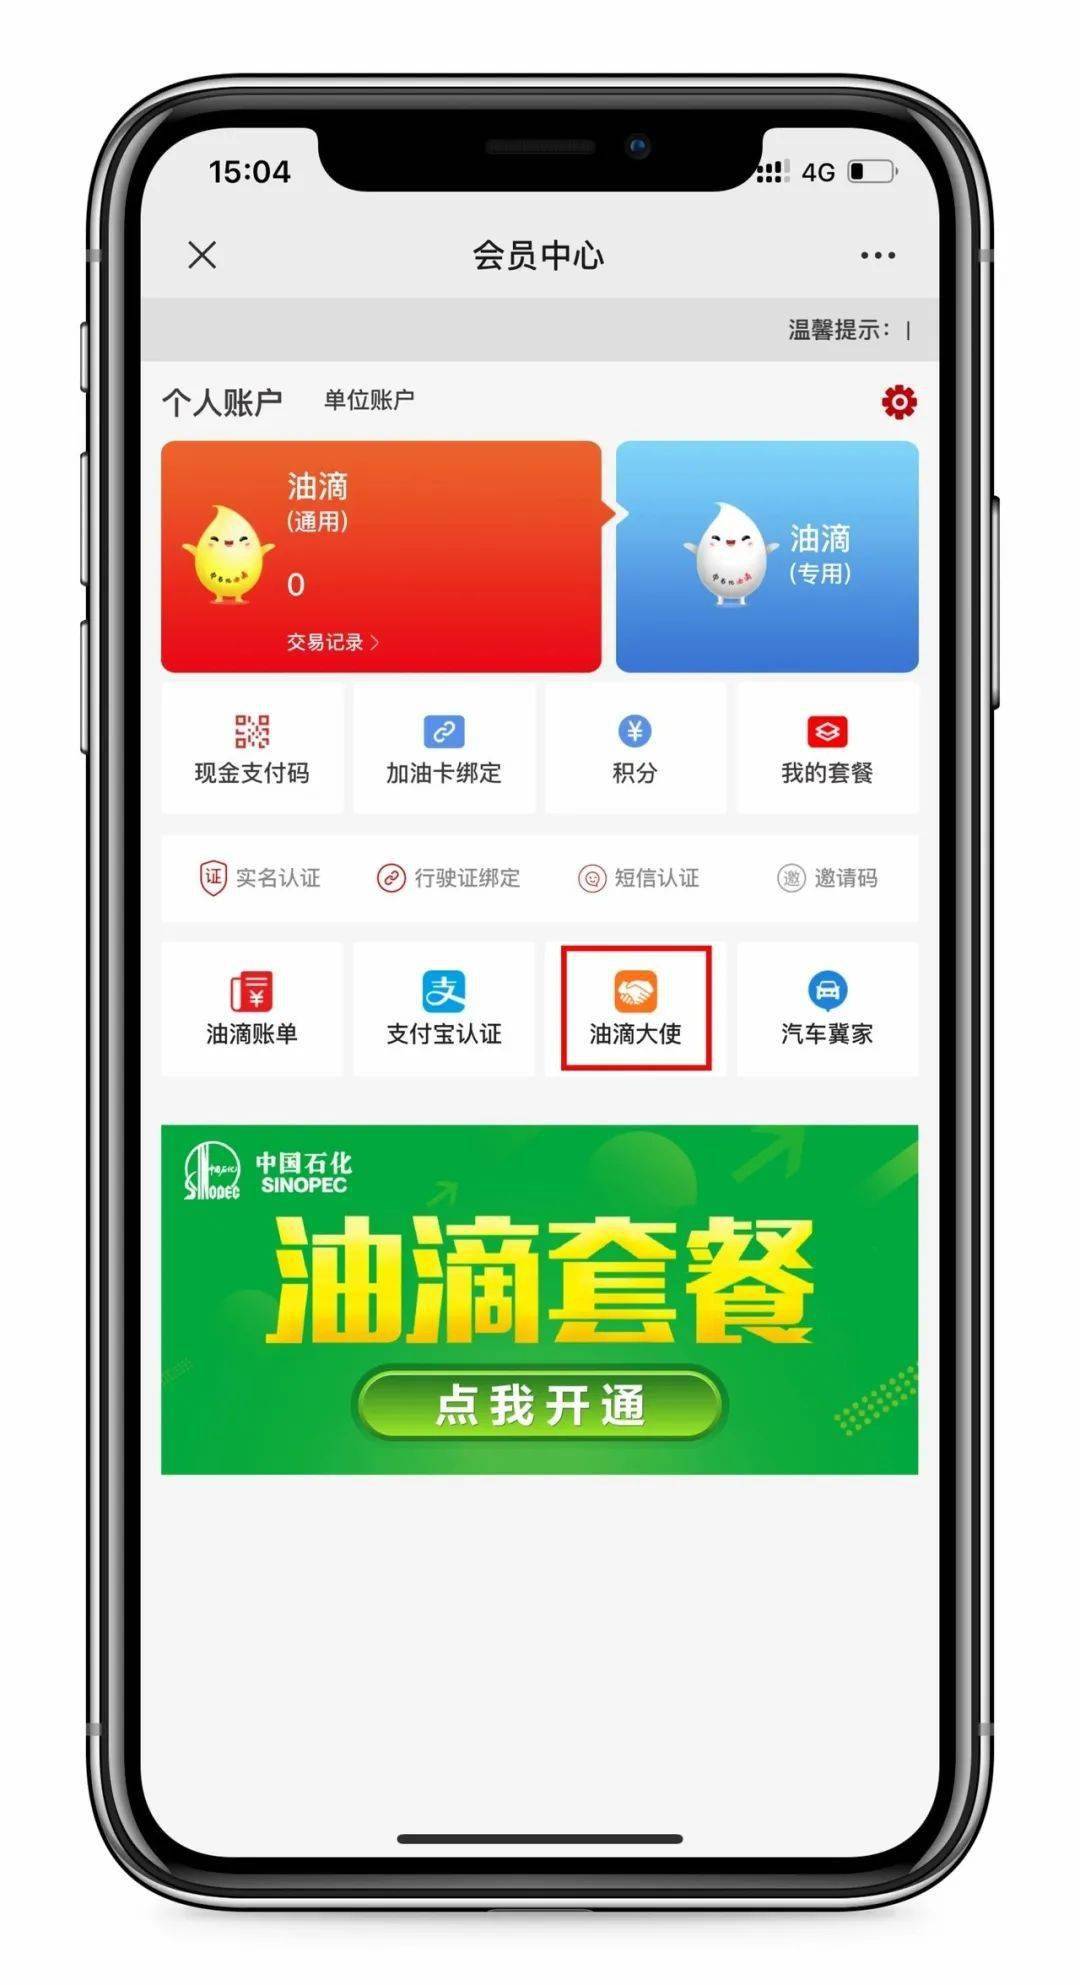 中国石化江苏客户服务中心微信公众号打不开